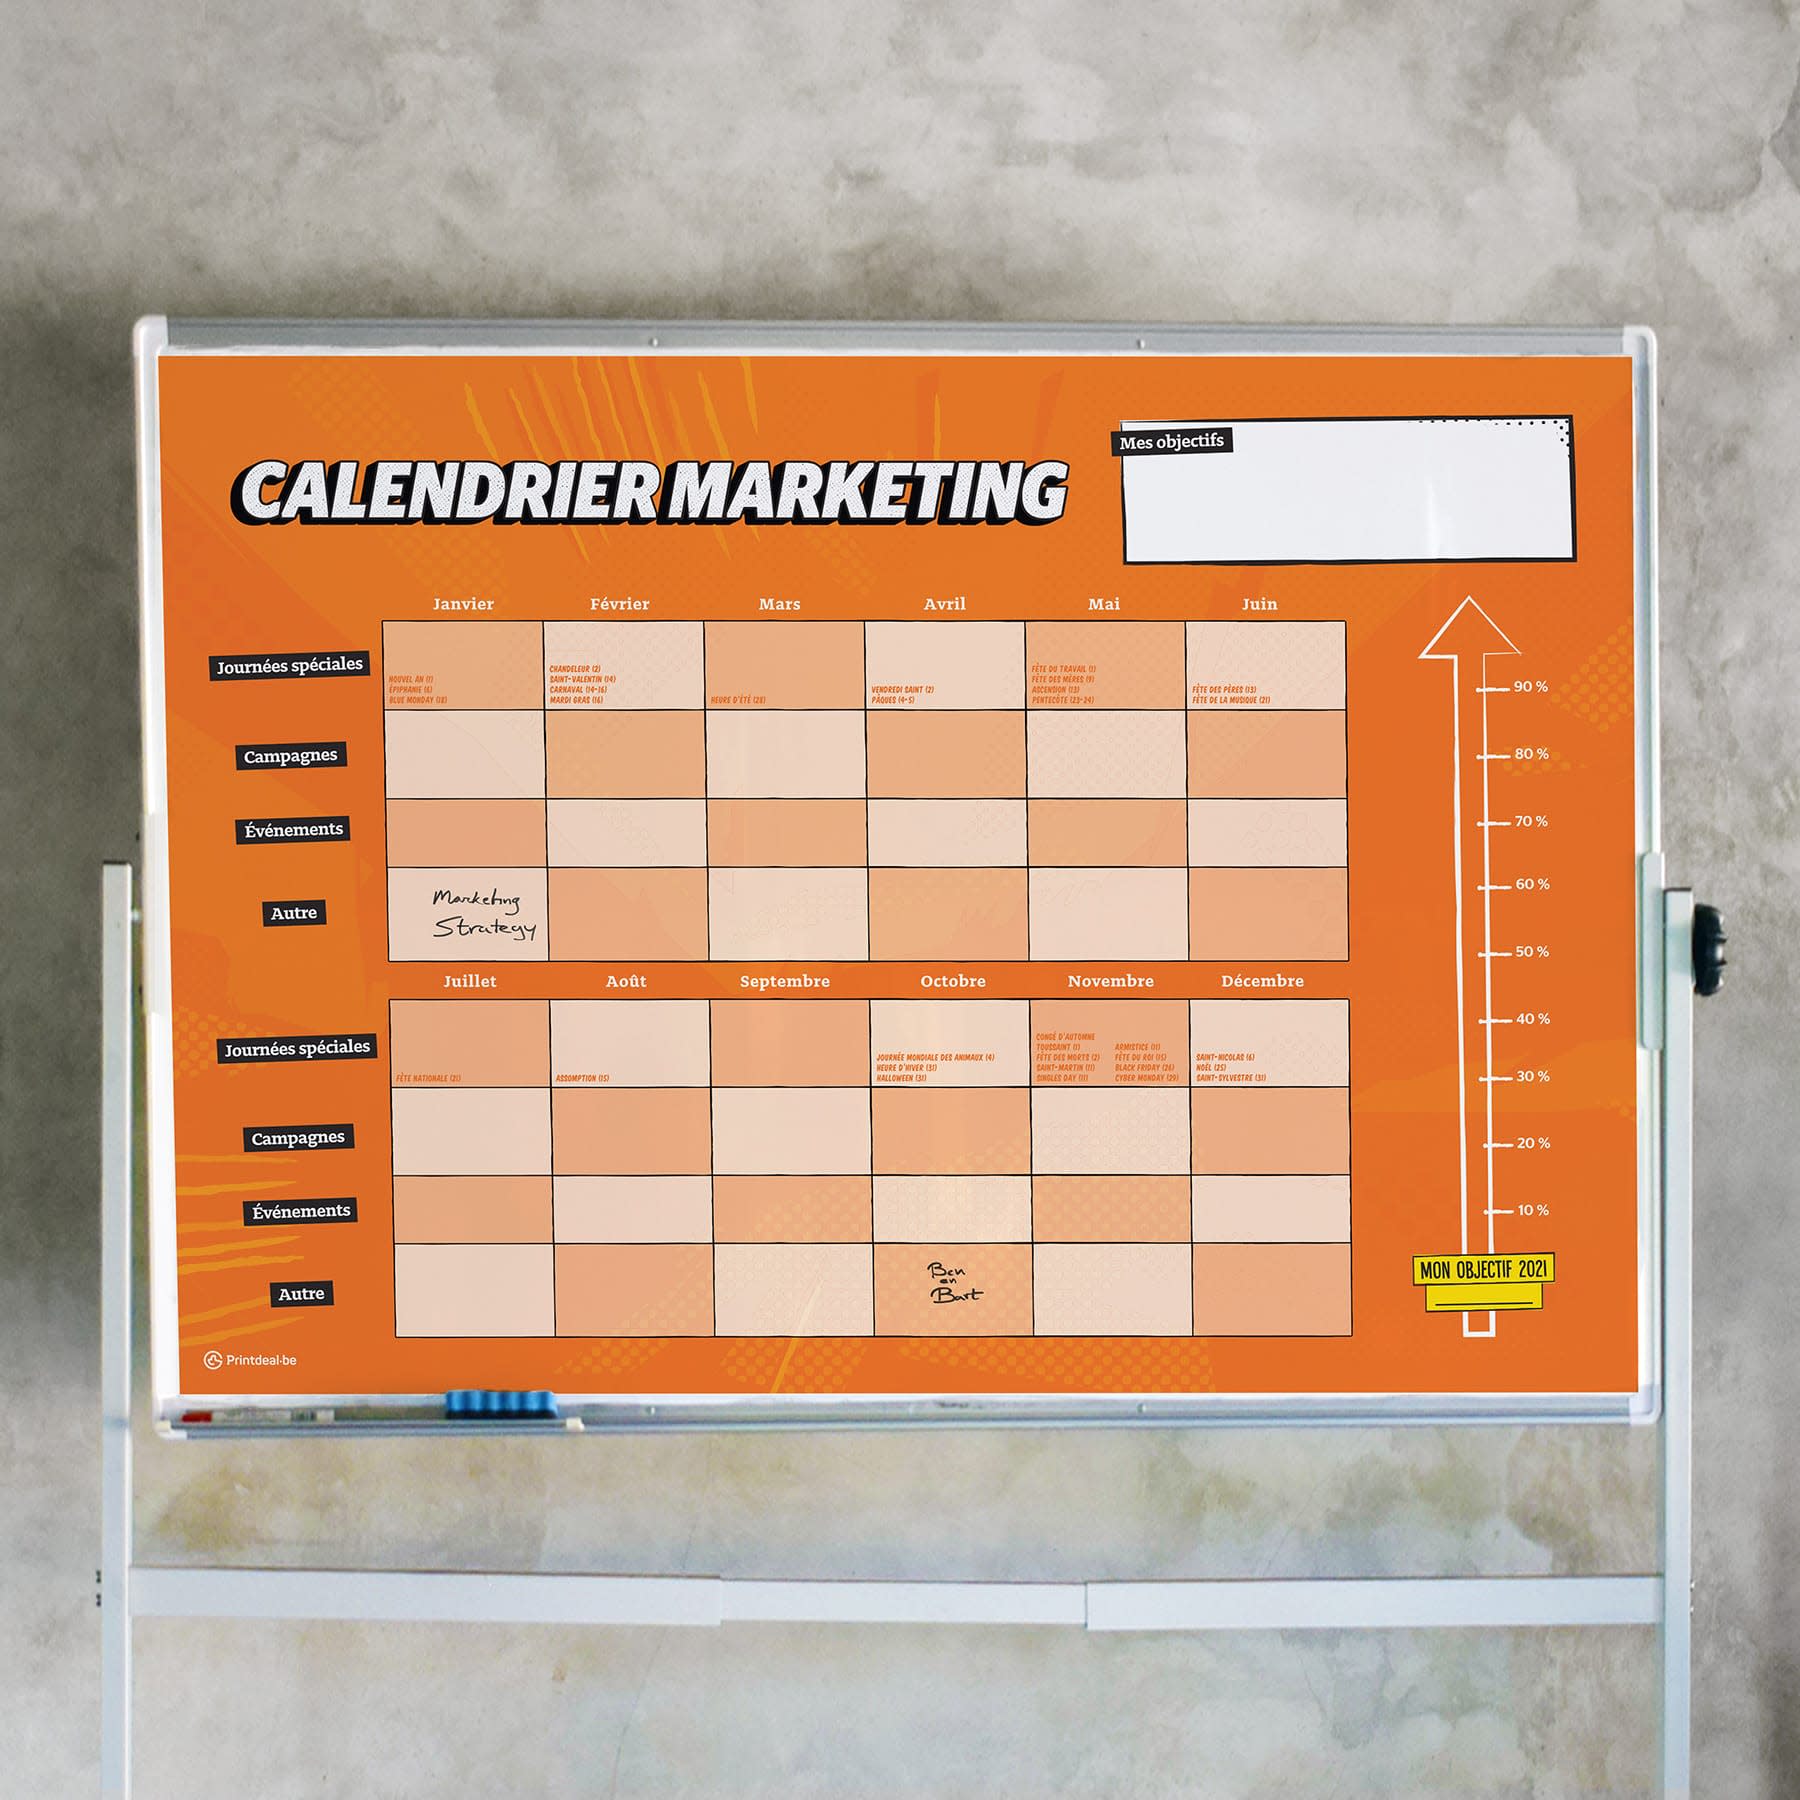 marketingkalender whiteboardsticker FR